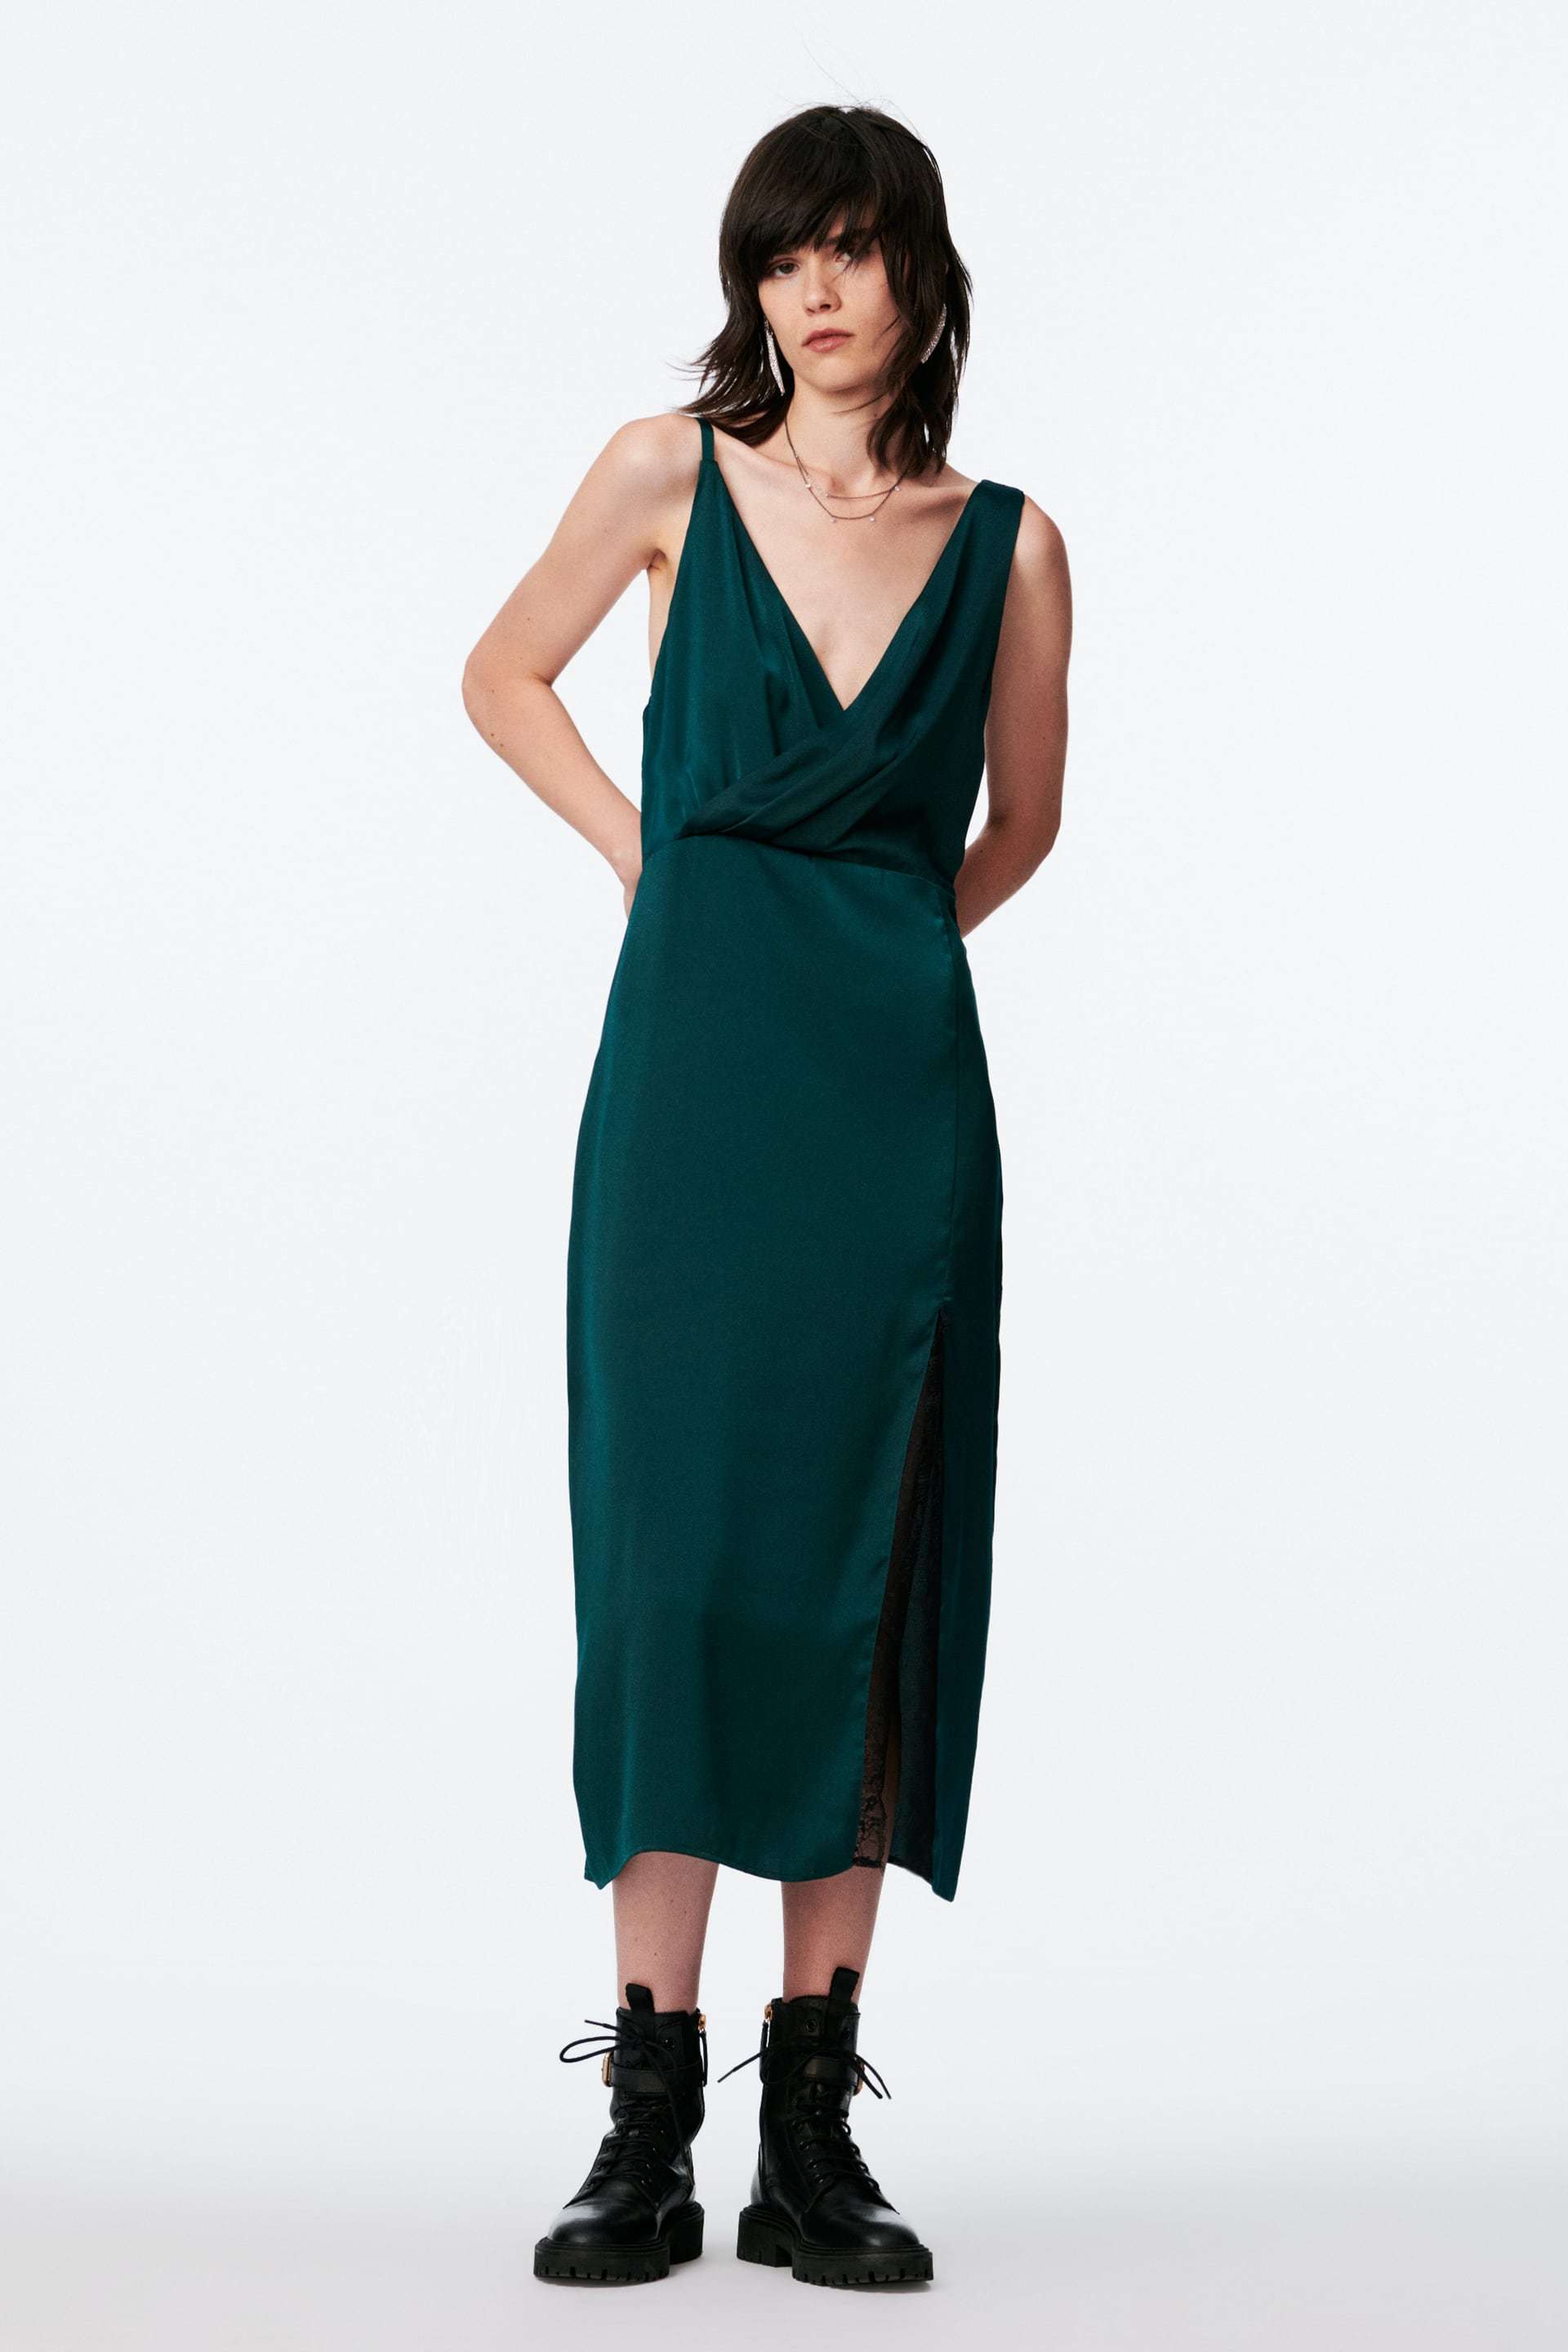 Embassy Notorious Mathematical 10 vestidos de invitada de Zara con los que triunfarás este otoño |  Telva.com